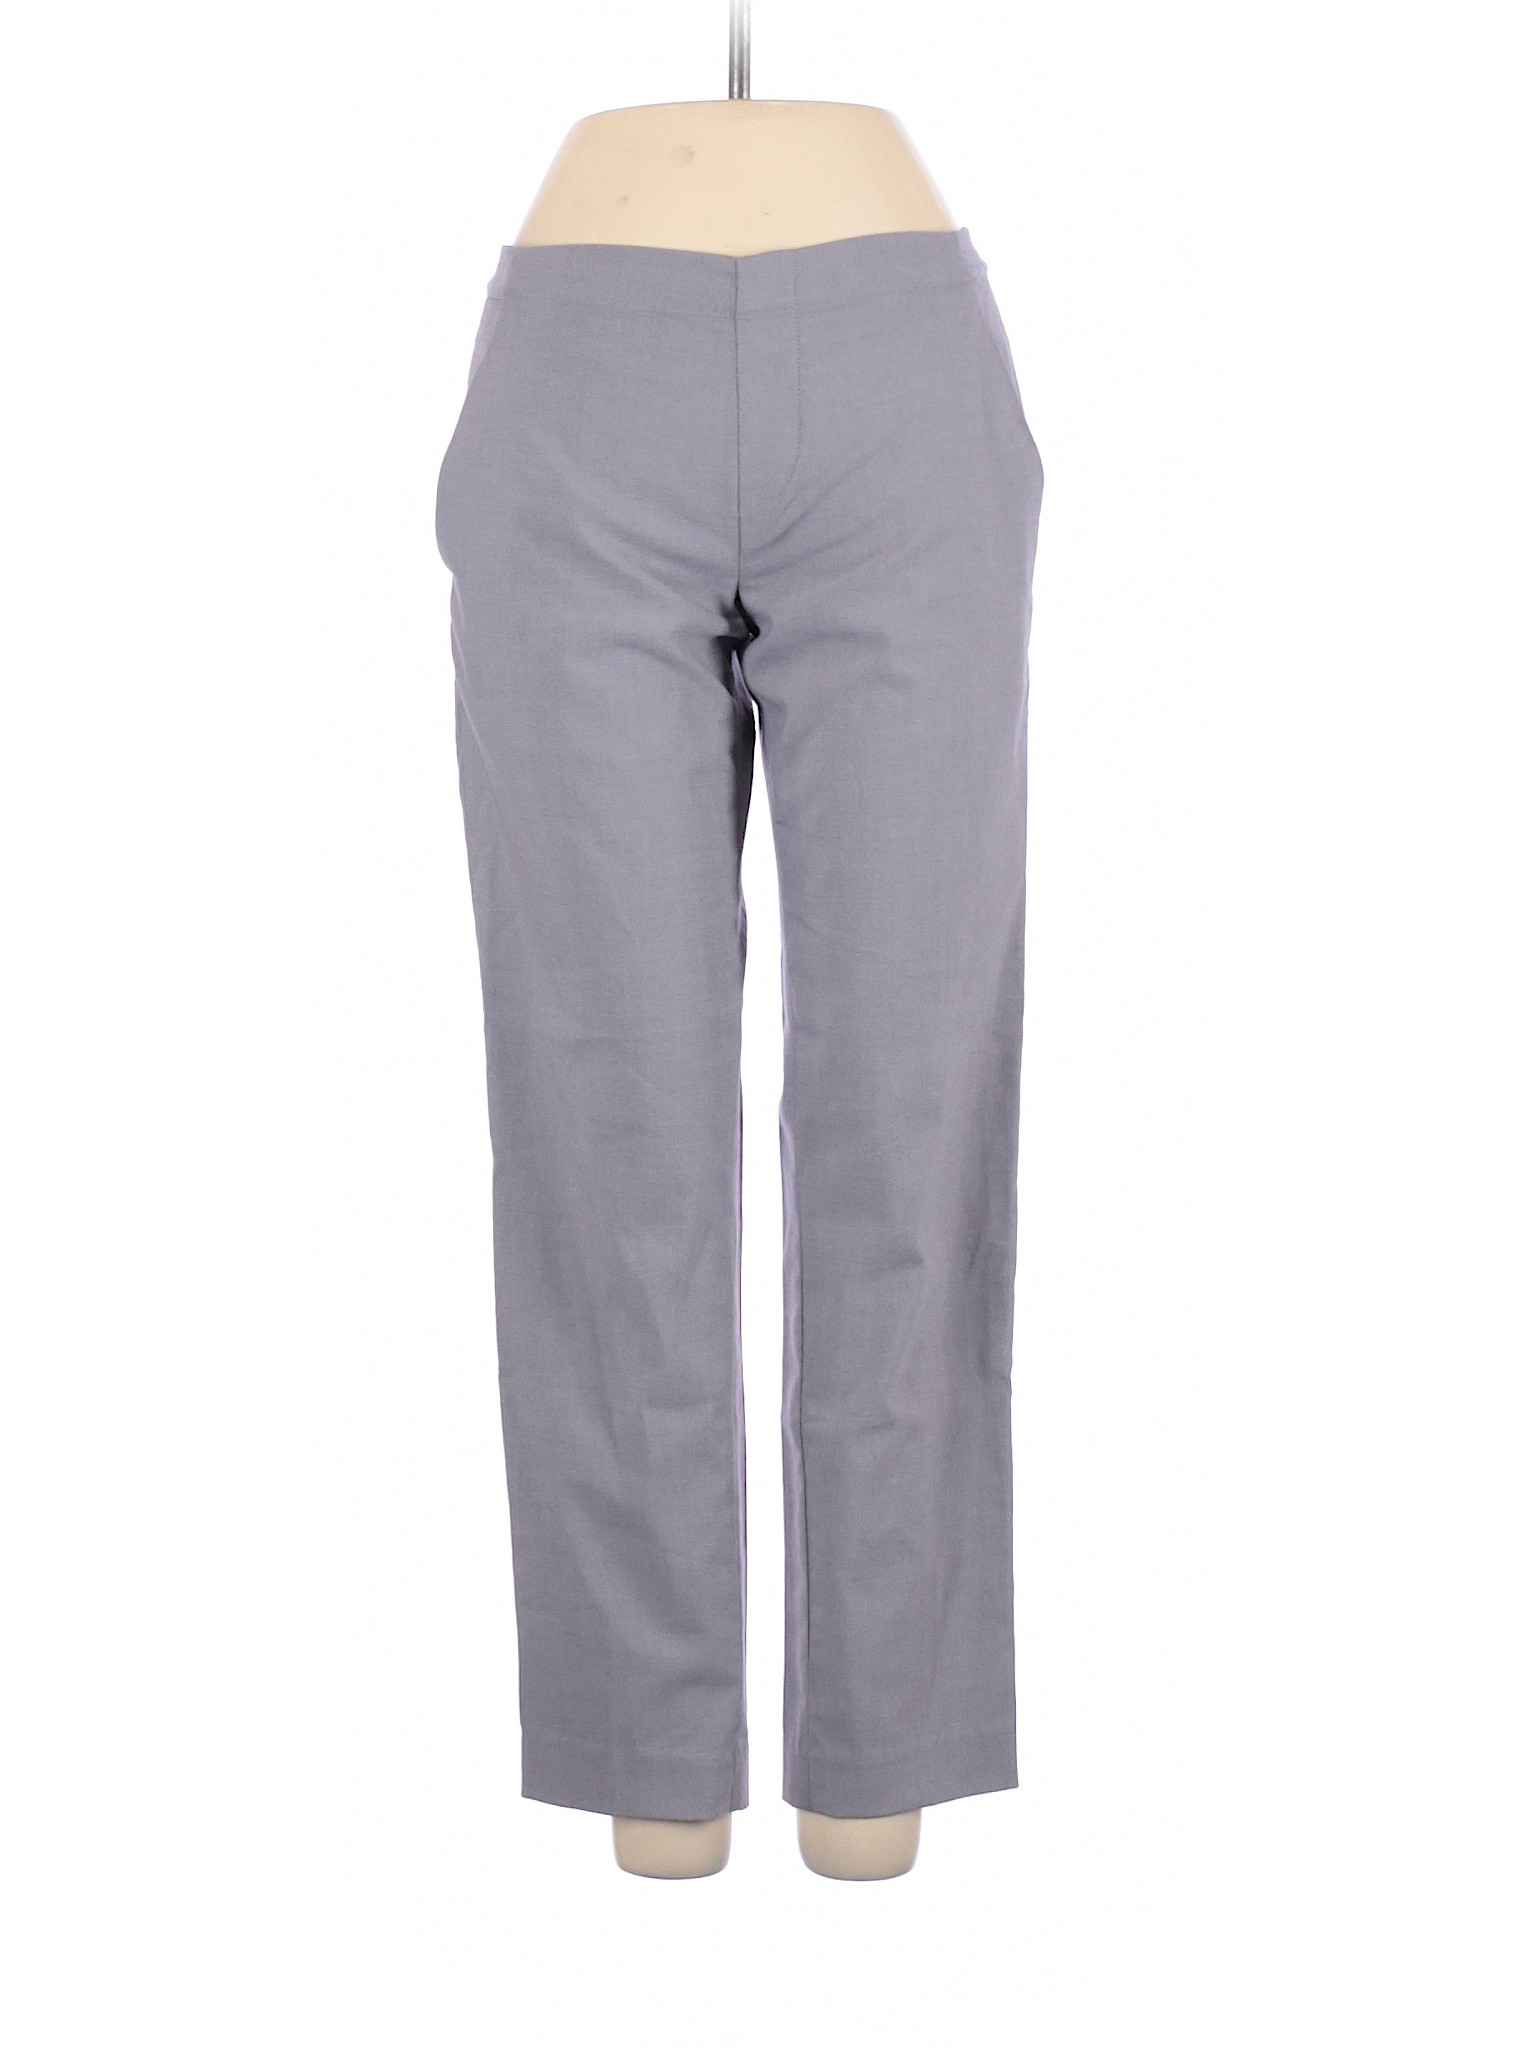 Uniqlo Women Gray Dress Pants XS | eBay